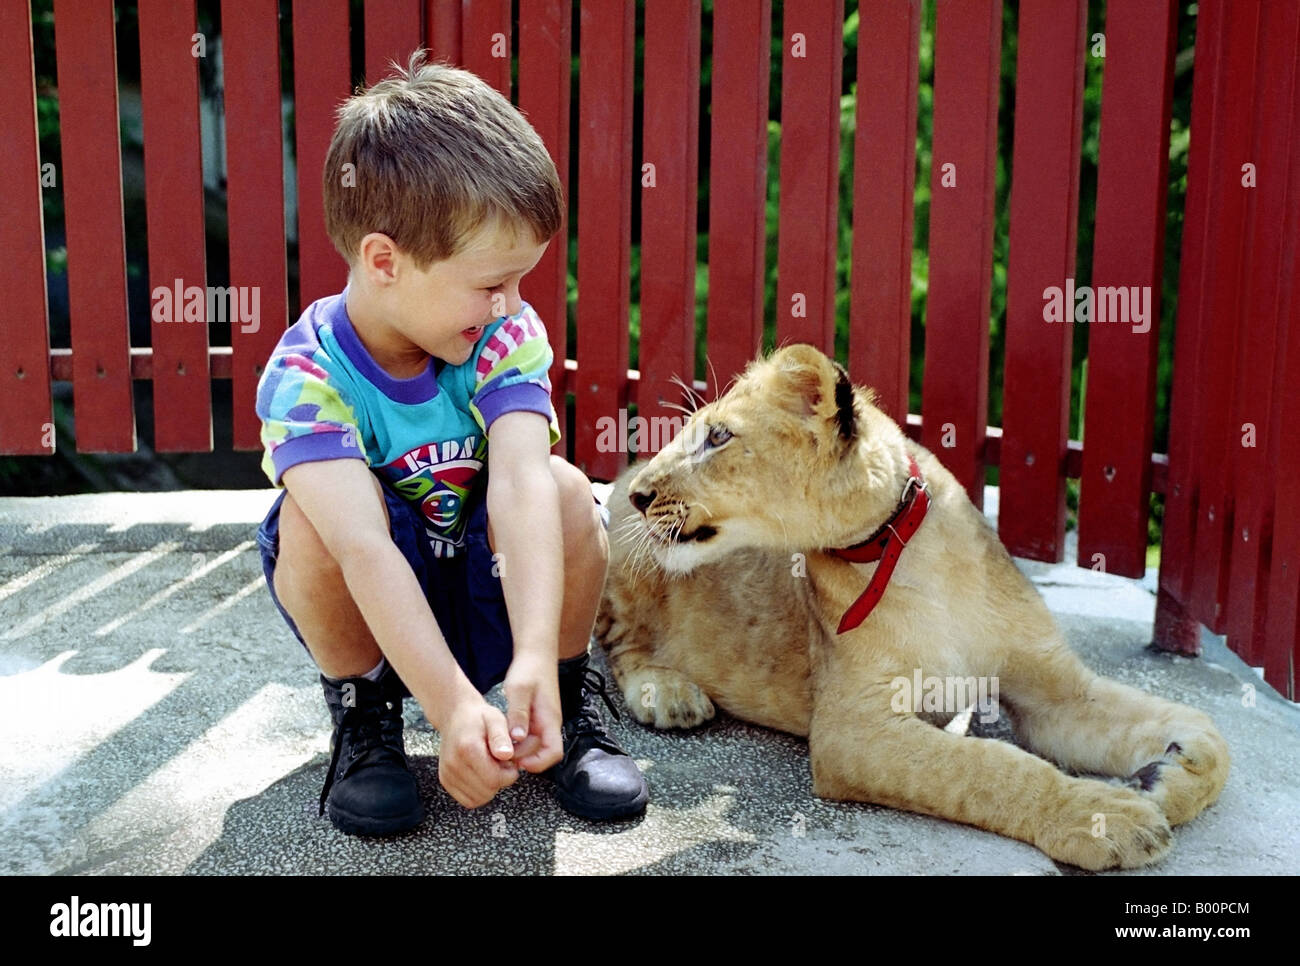 Bambino con leone immagini e fotografie stock ad alta risoluzione - Alamy